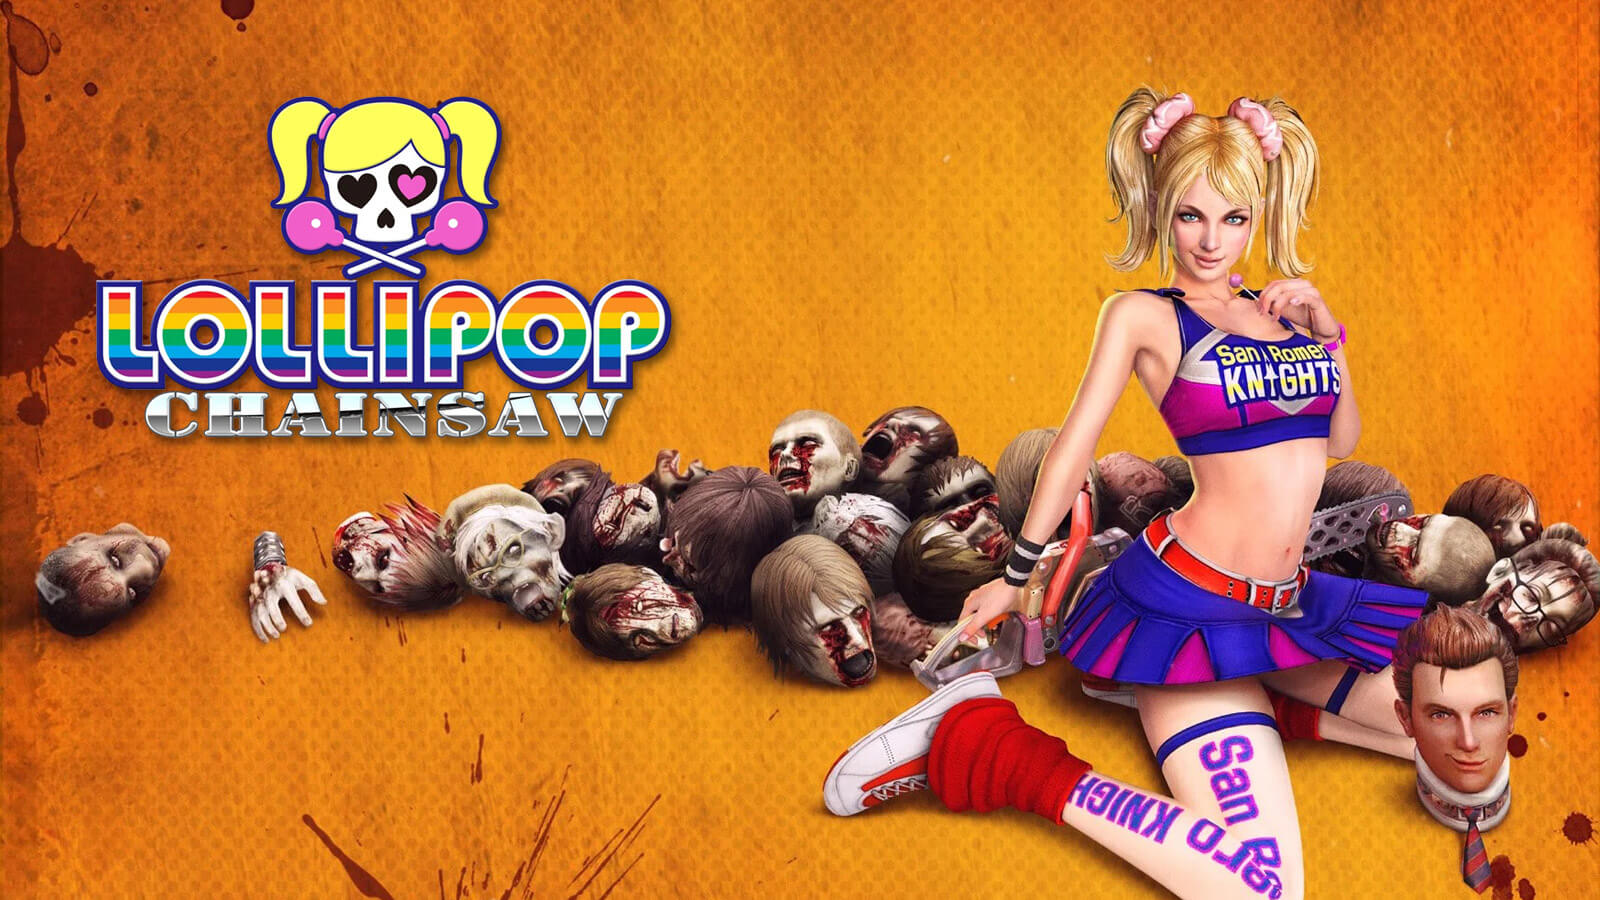 Lollipop Chainsaw remake in development for 2023